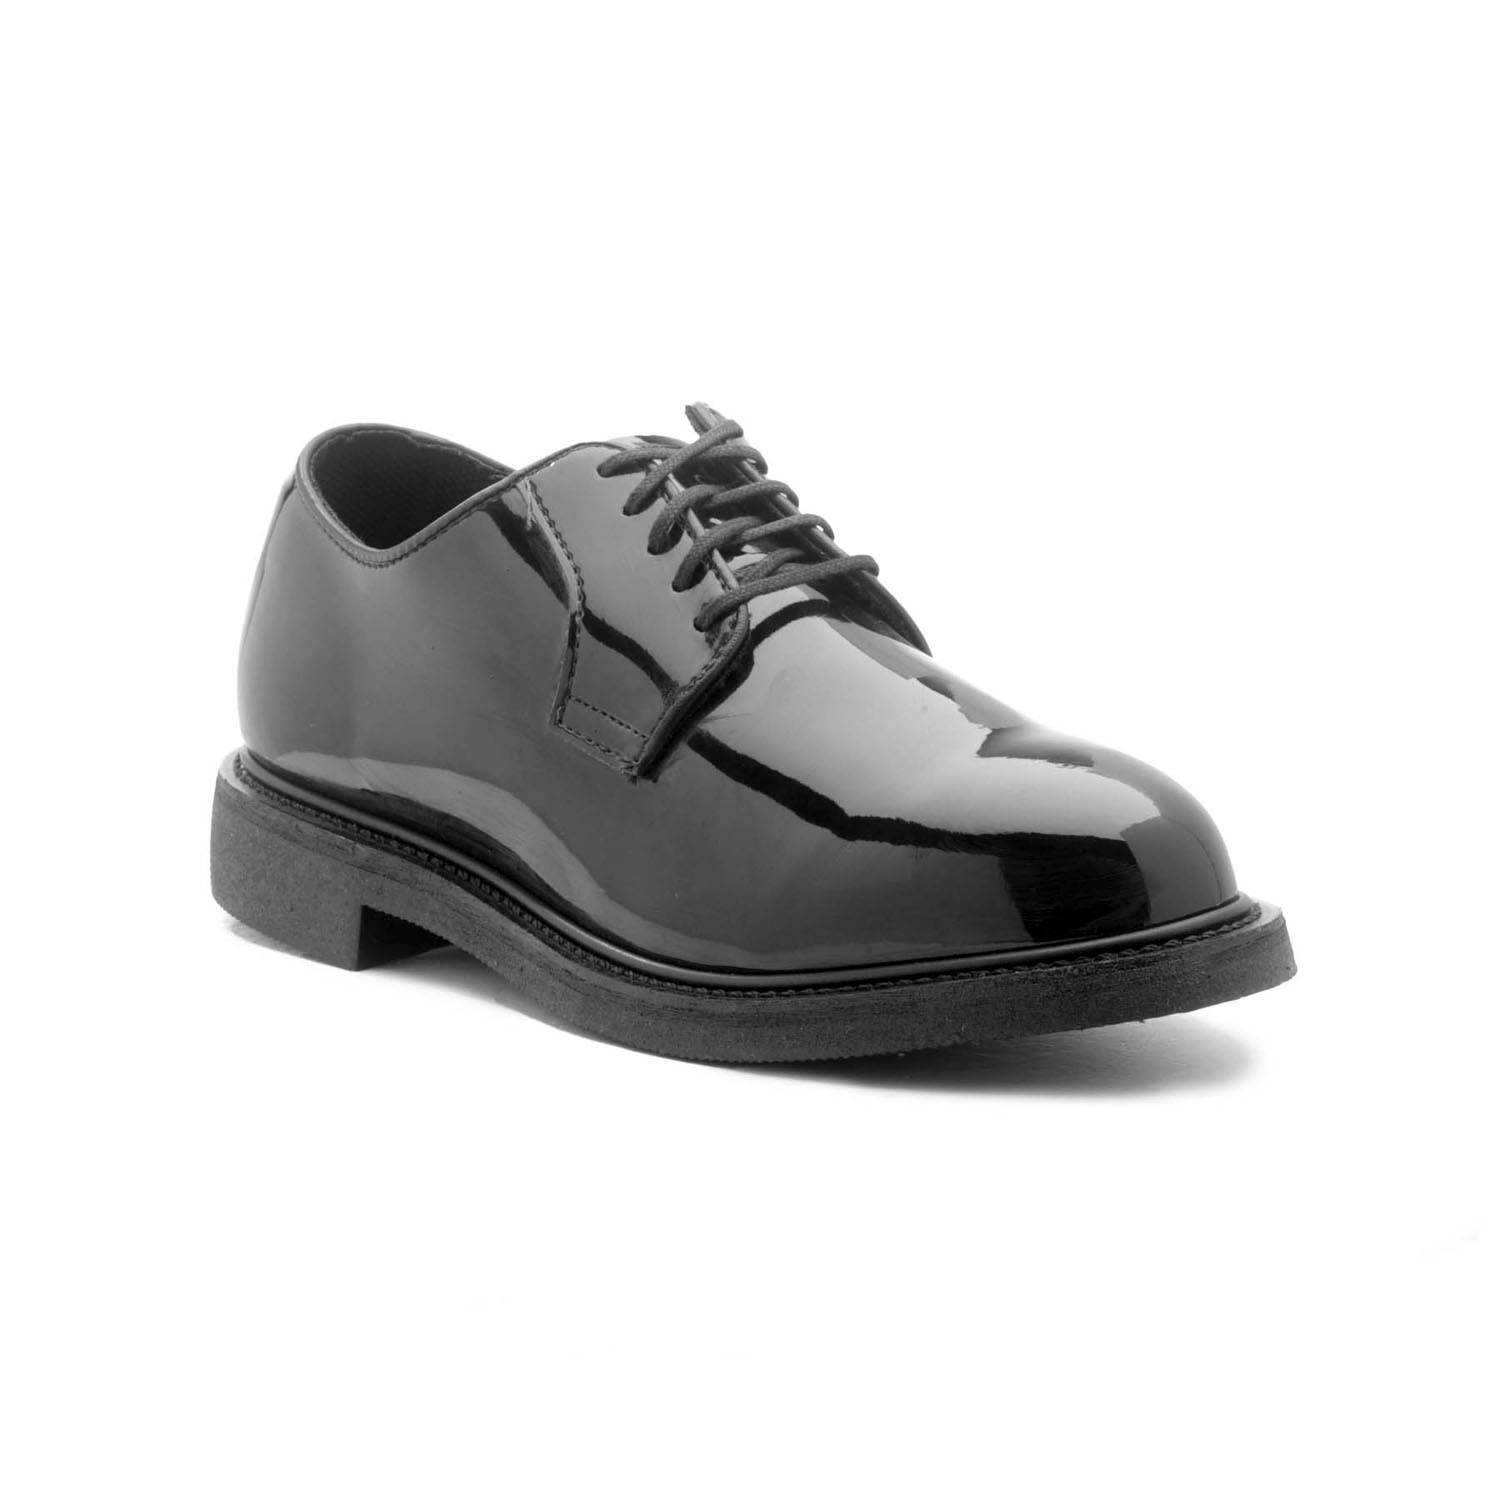 Thorogood Mens USA Oxford Uniform Shoes